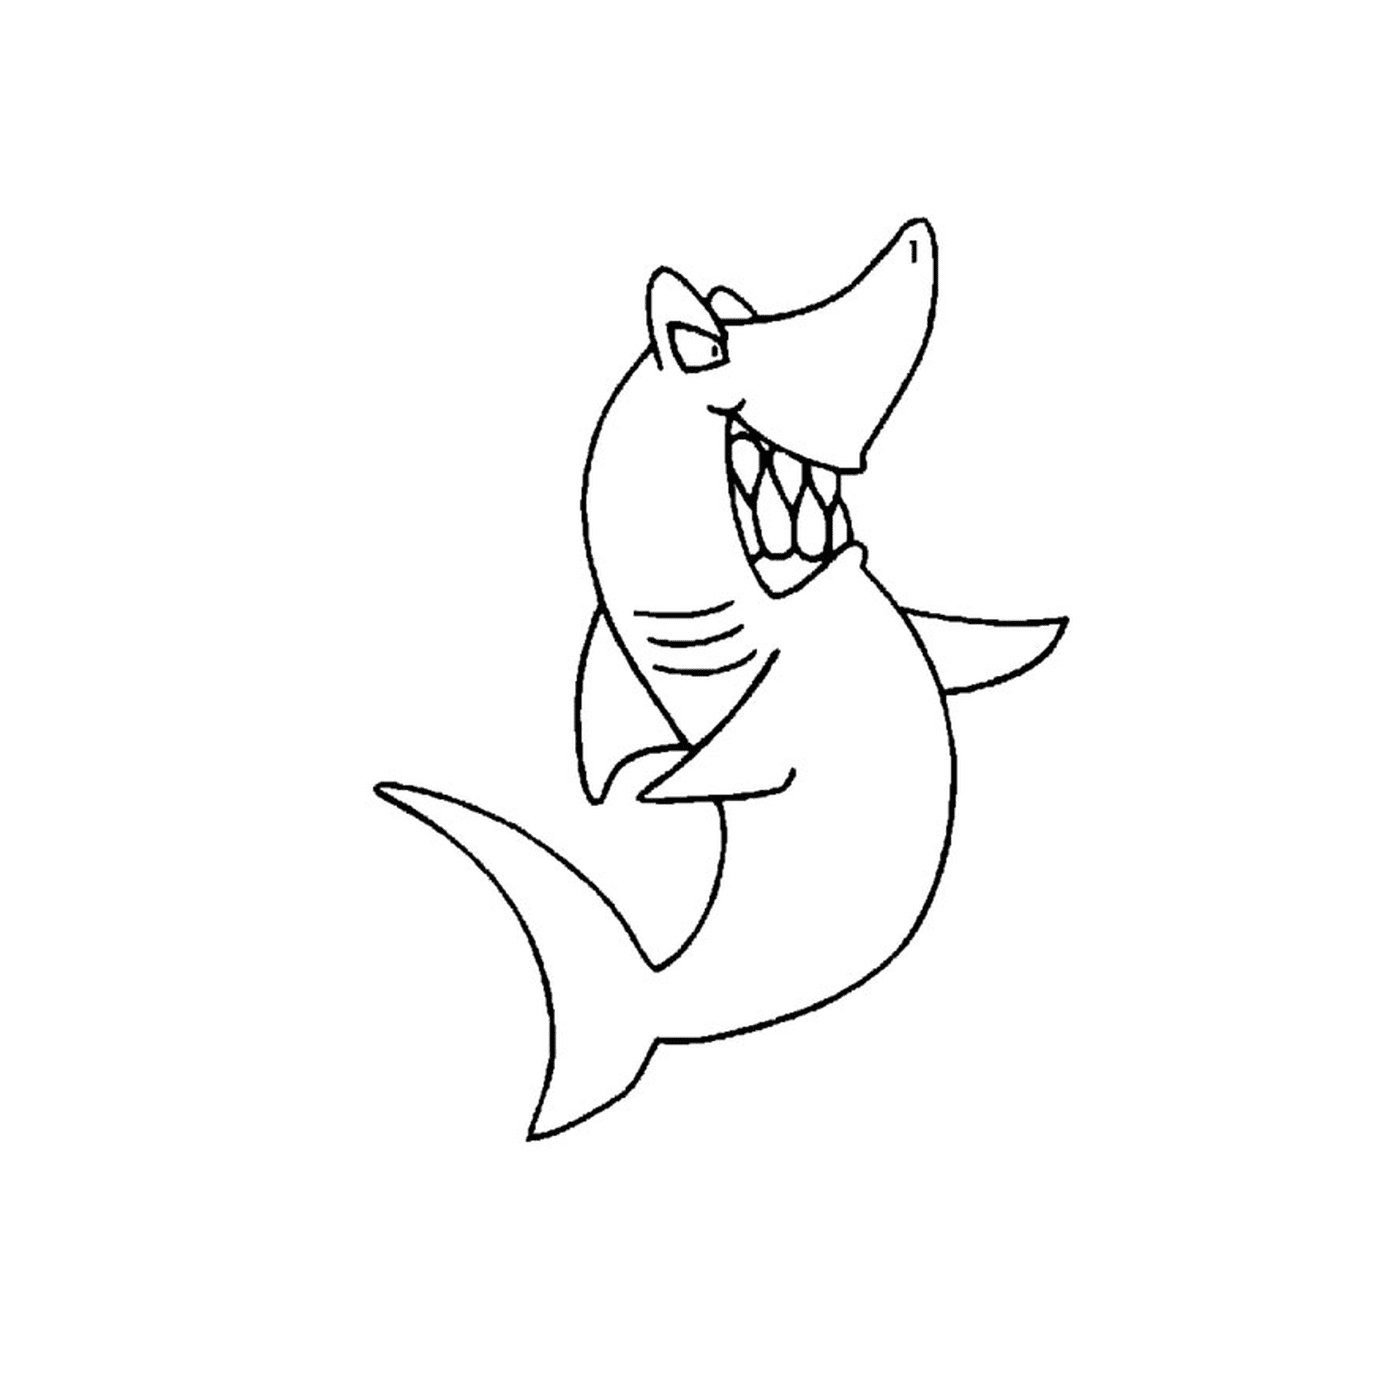  Tiburón Peregrino sonriendo 